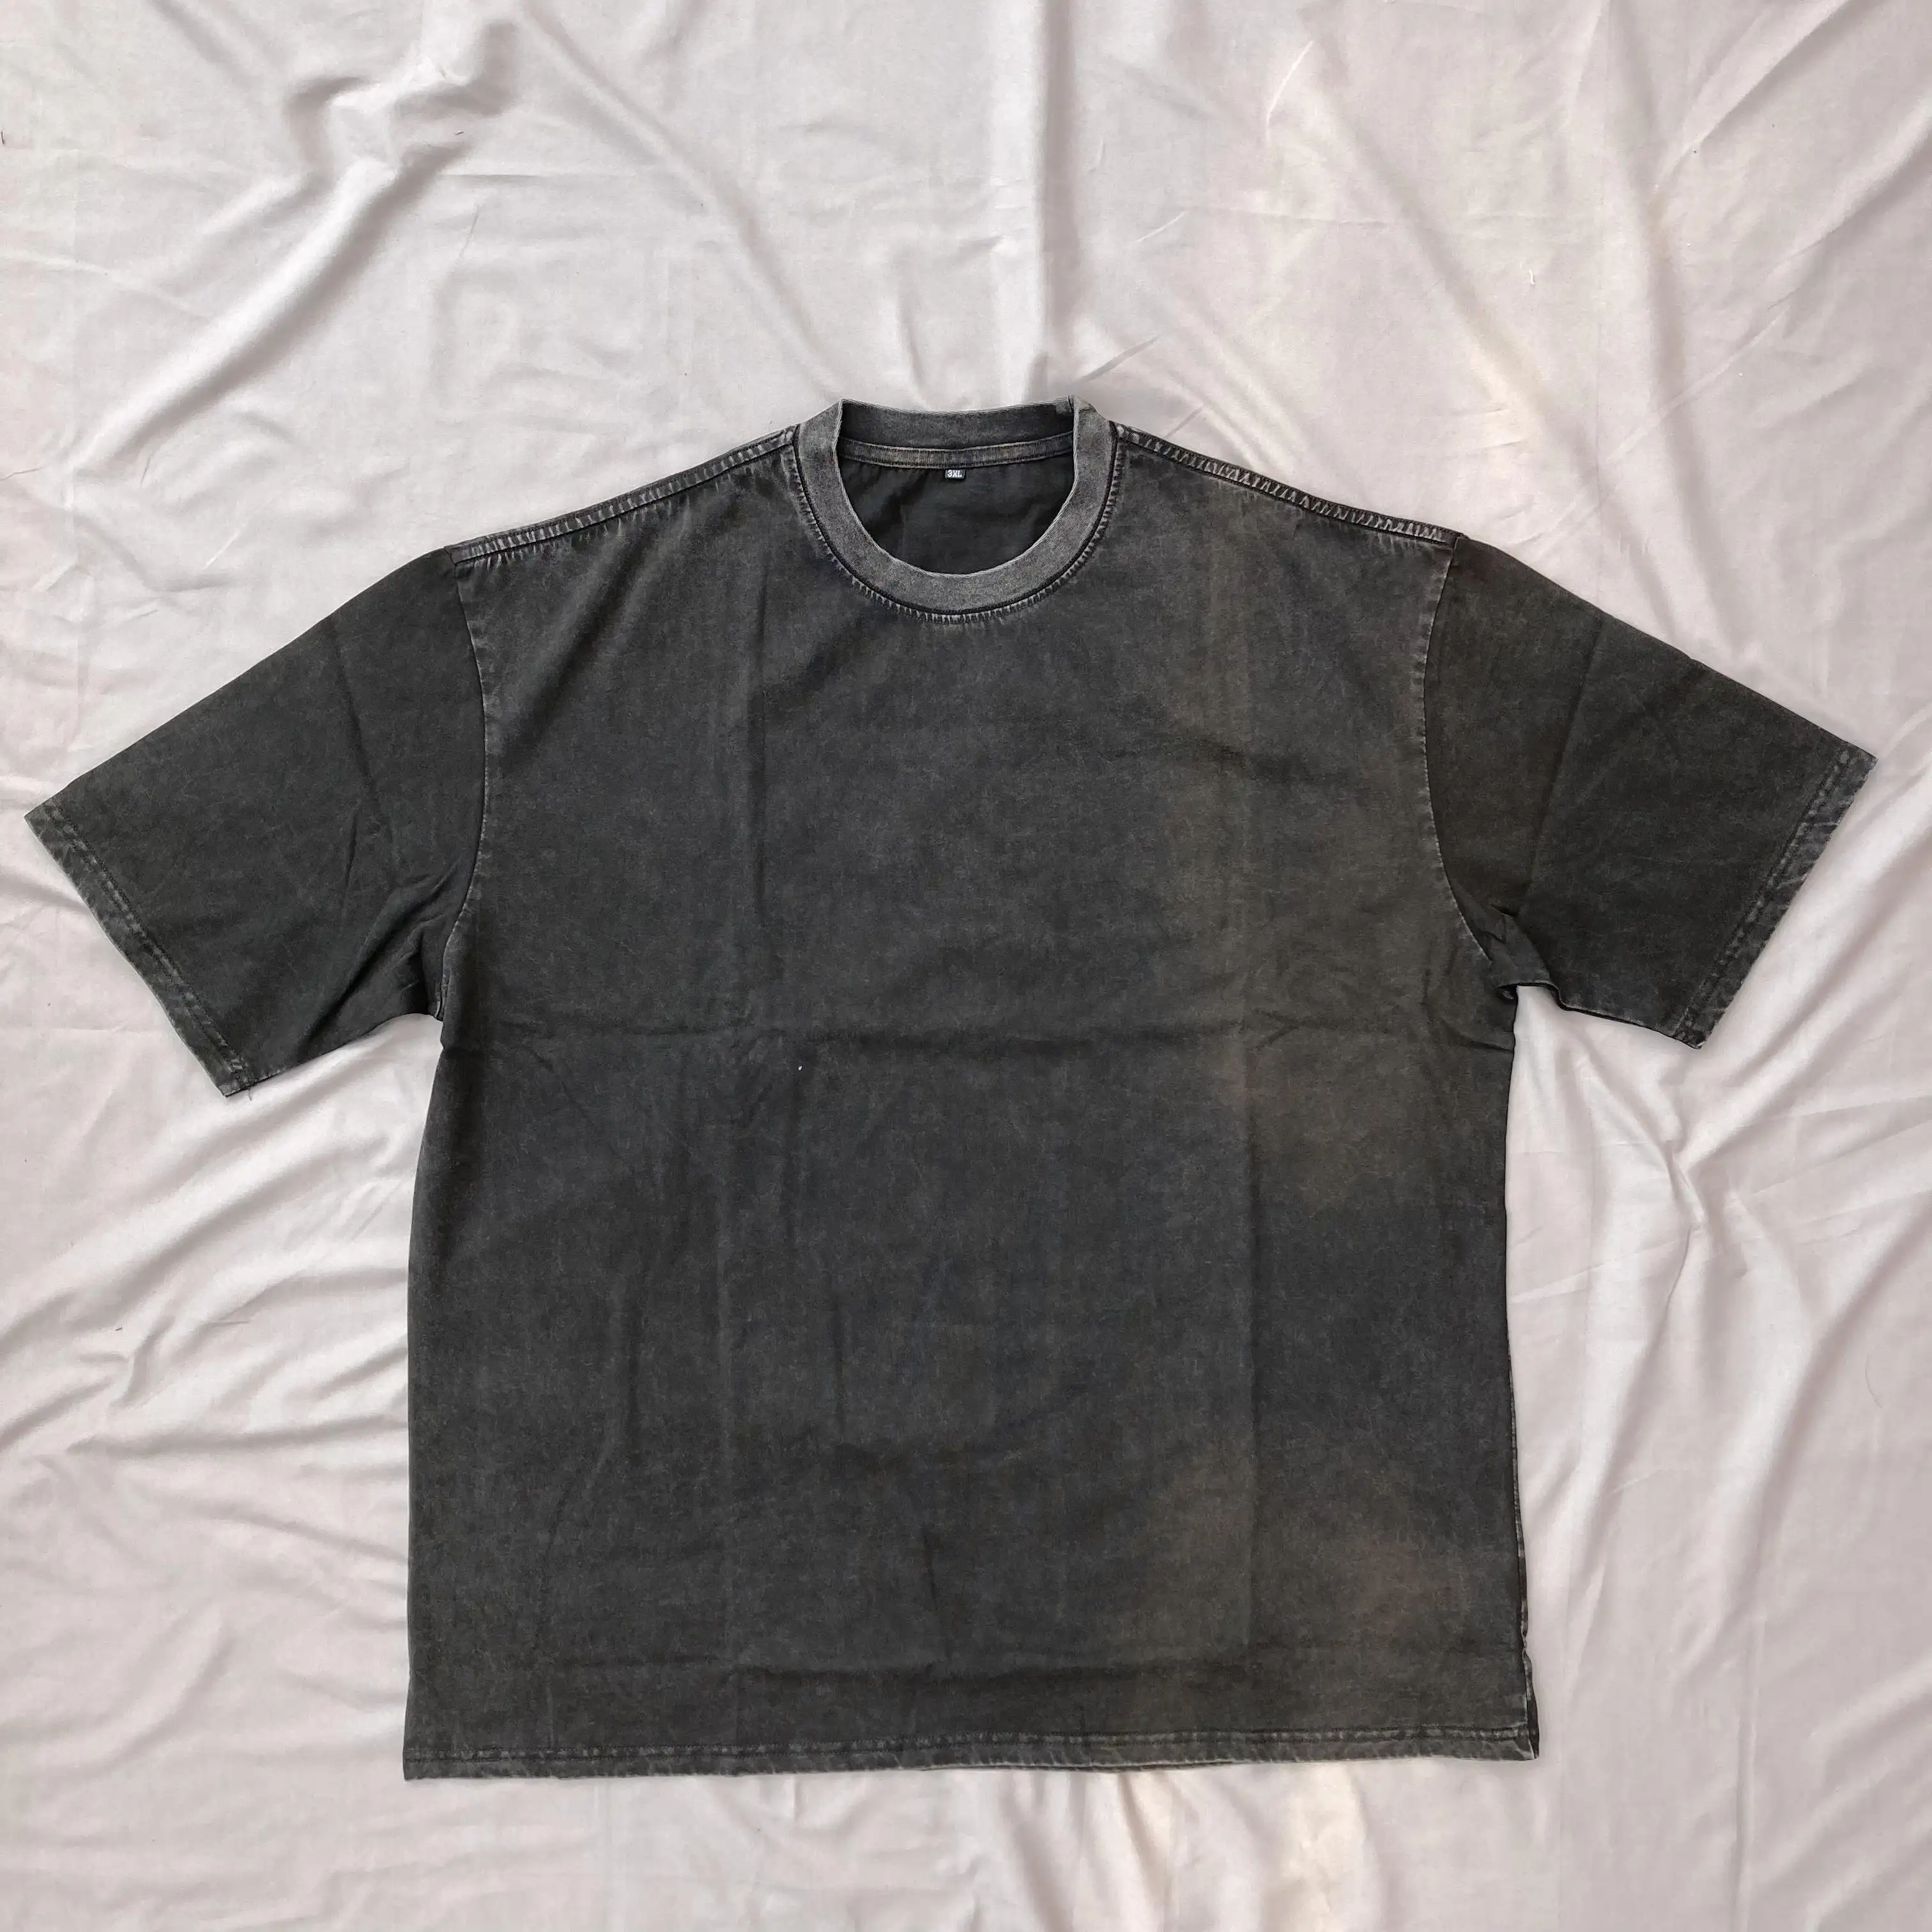 Hip Hop Muscle Fit Curved Hem black Cotton Quantity Trend vintage wash hole men T shirt